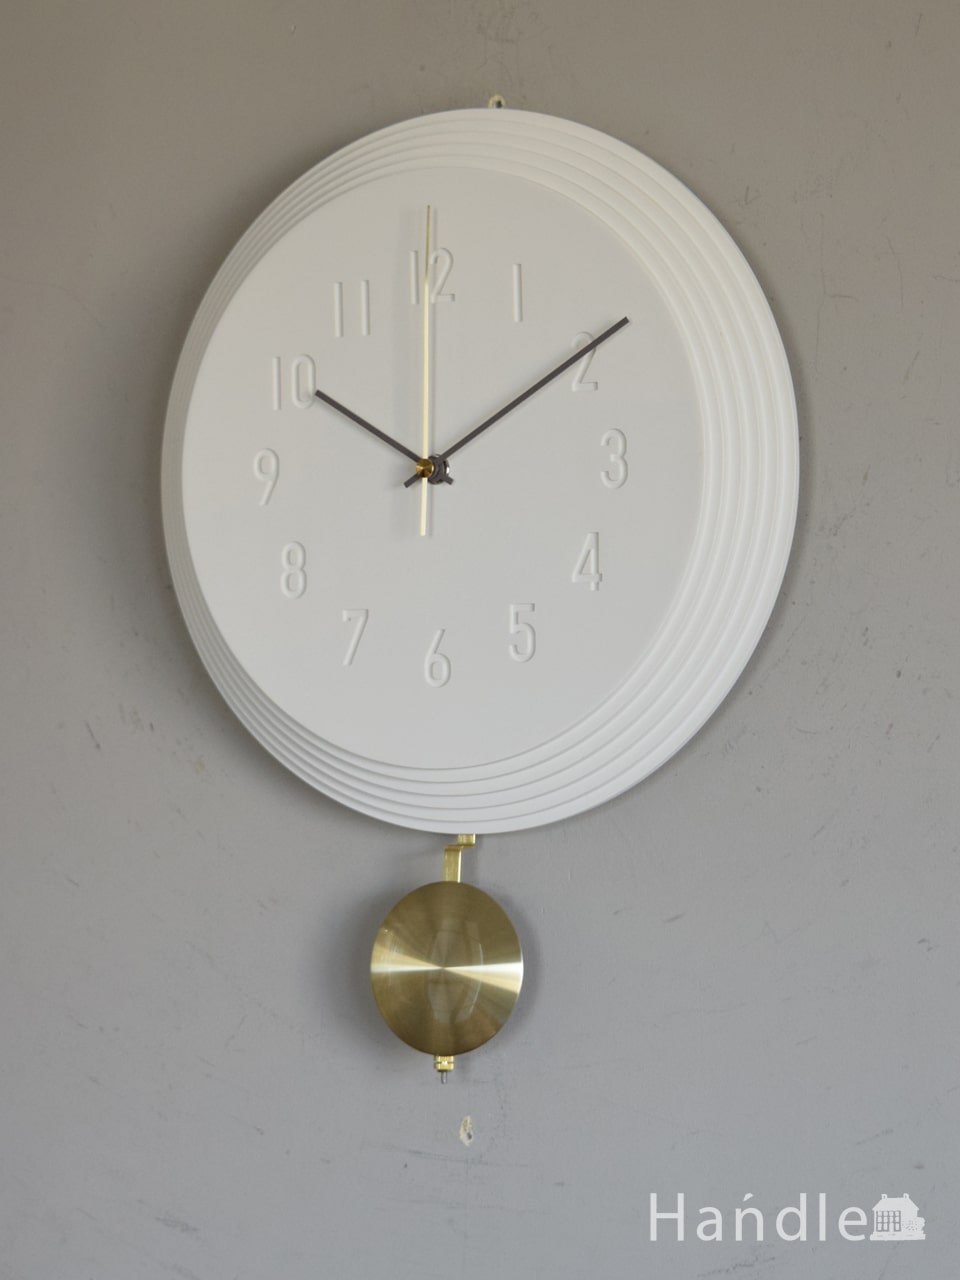 イタリアから届いたアンティーク調の掛け時計、カパーニ社の振子付時計 